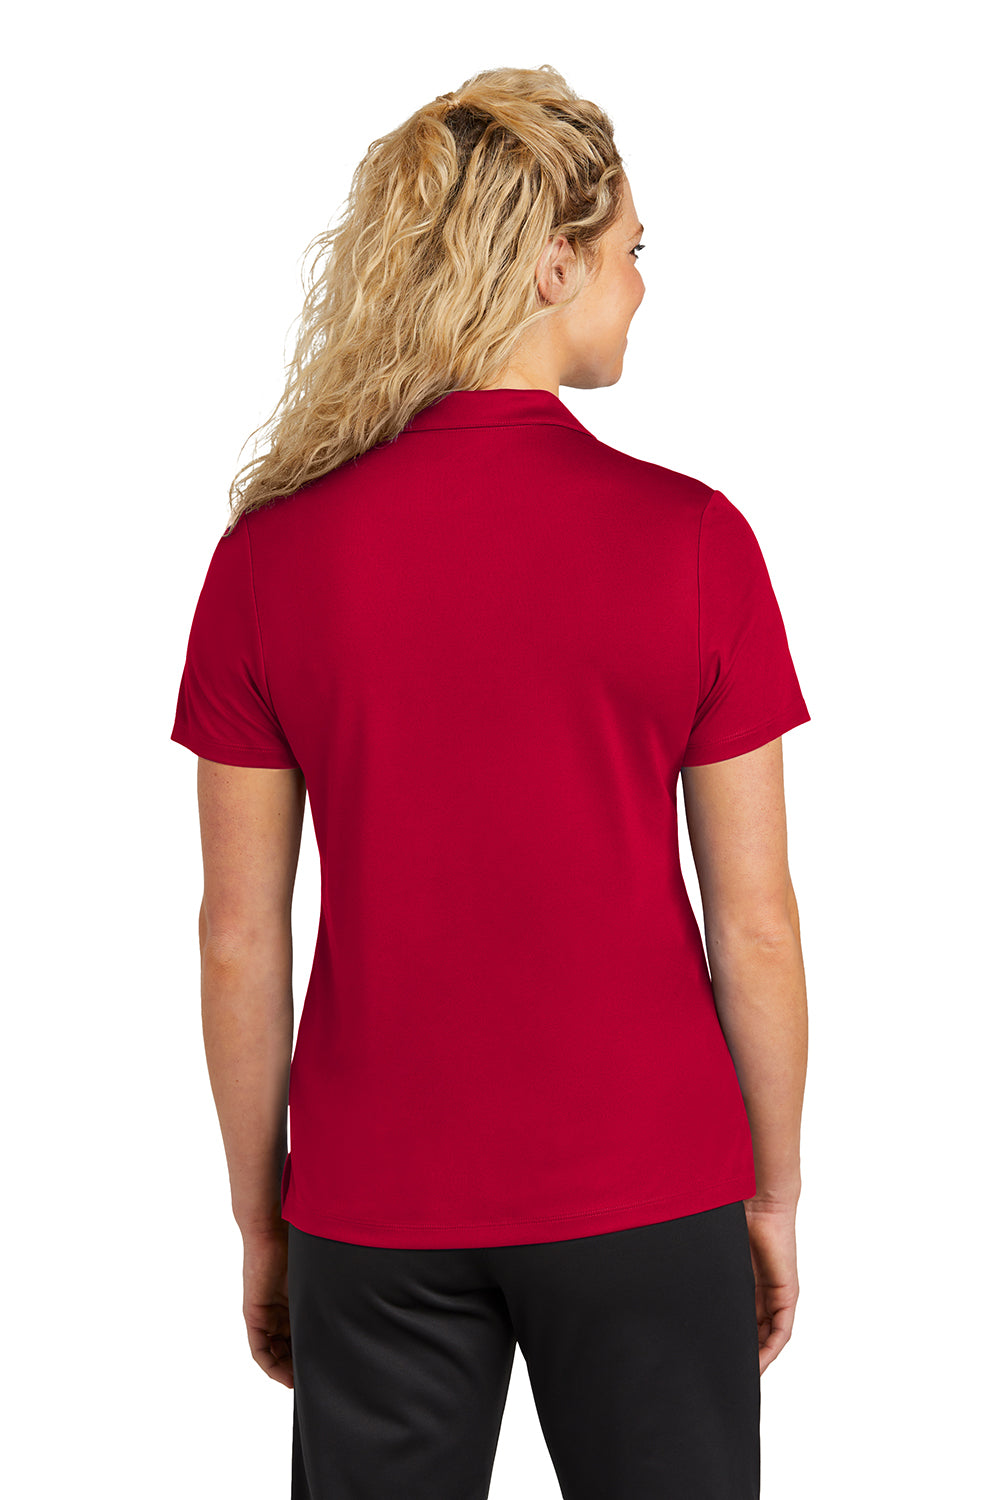 Sport-Tek LST740 Womens UV Micropique Short Sleeve Polo Shirt Deep Red Back